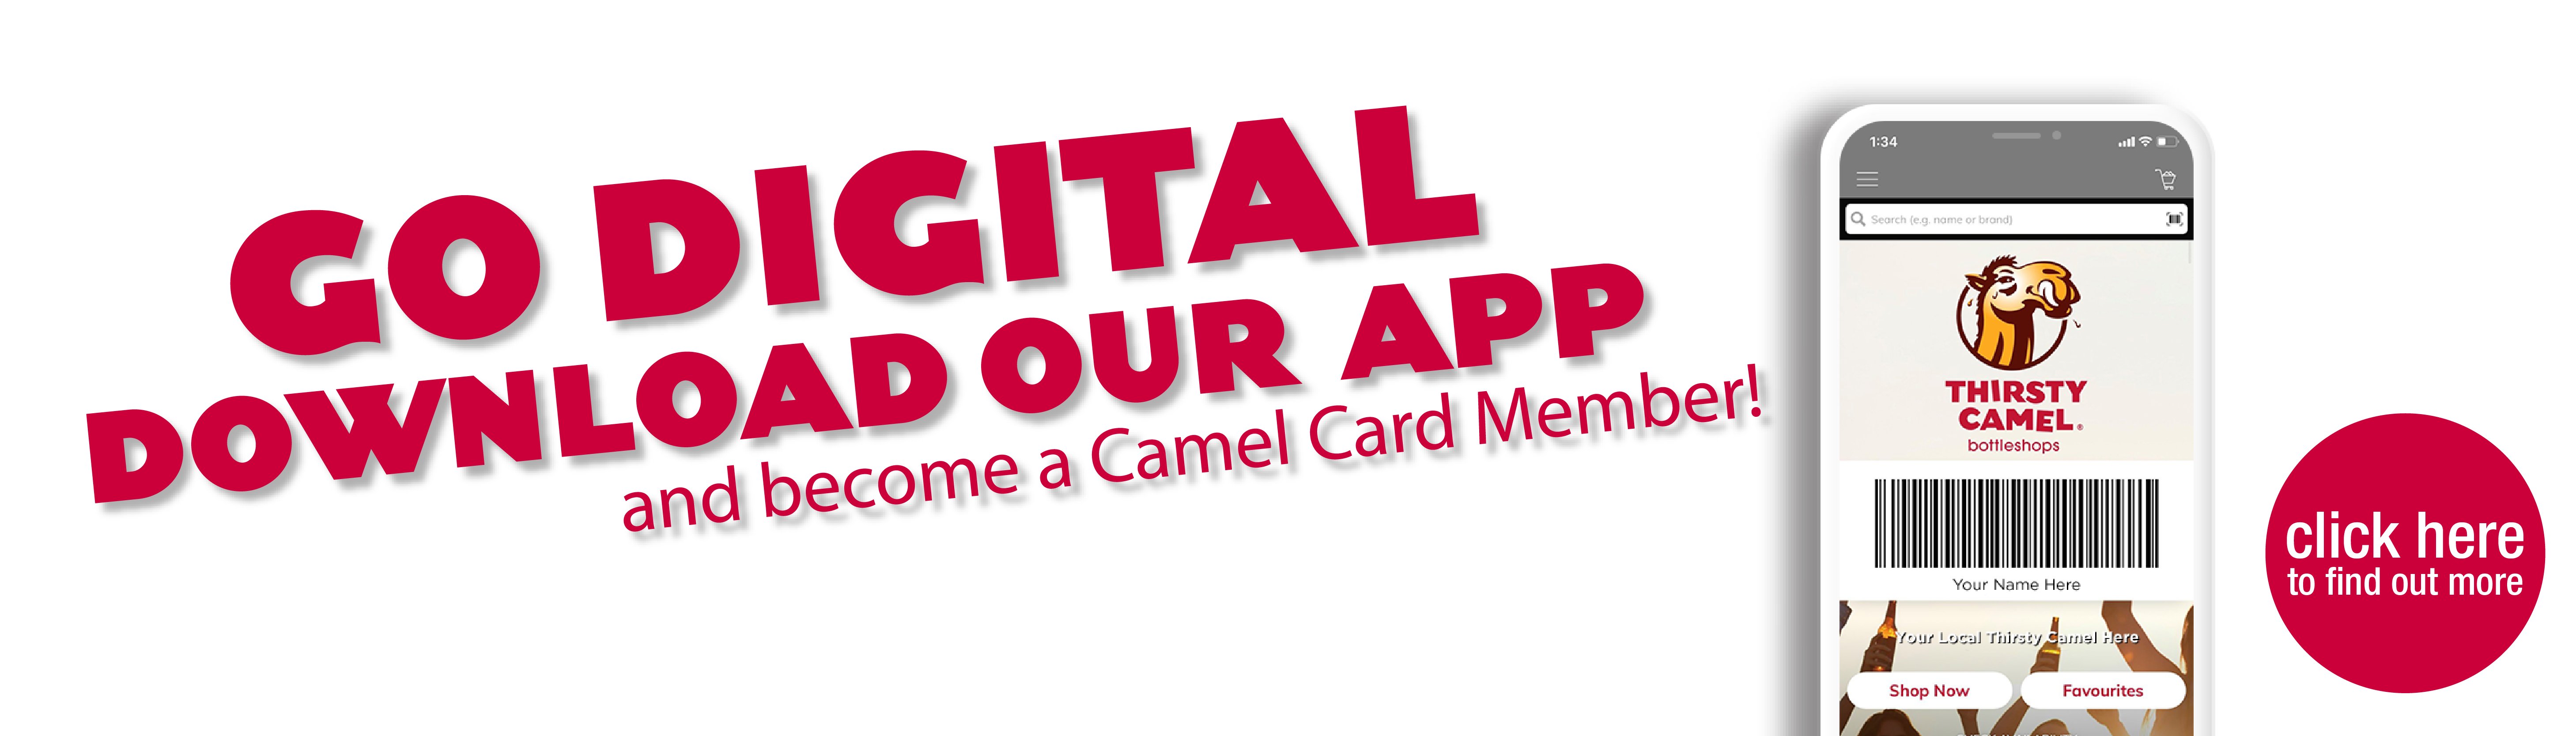 Go Digital Download Our App